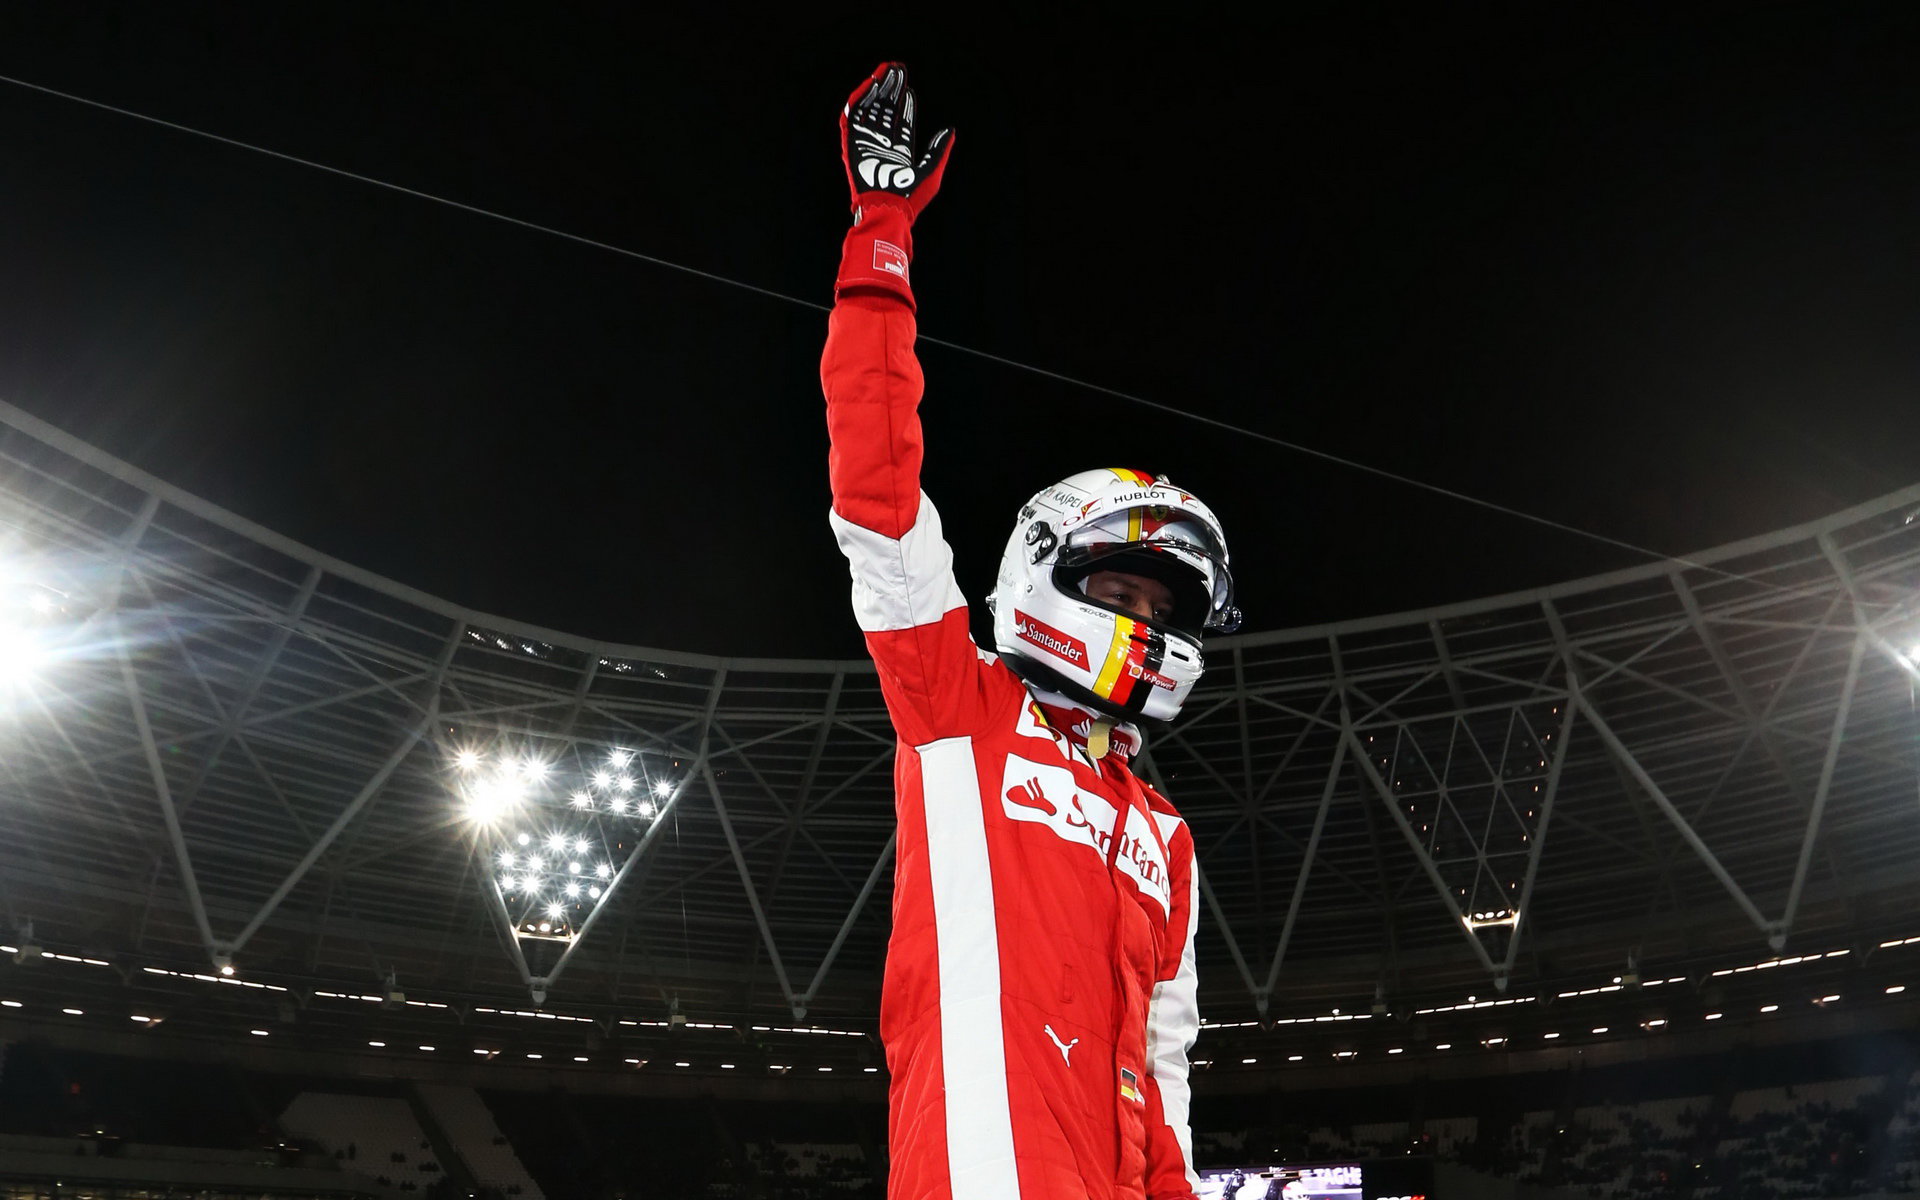 Sebastian Vettel při Race of champions